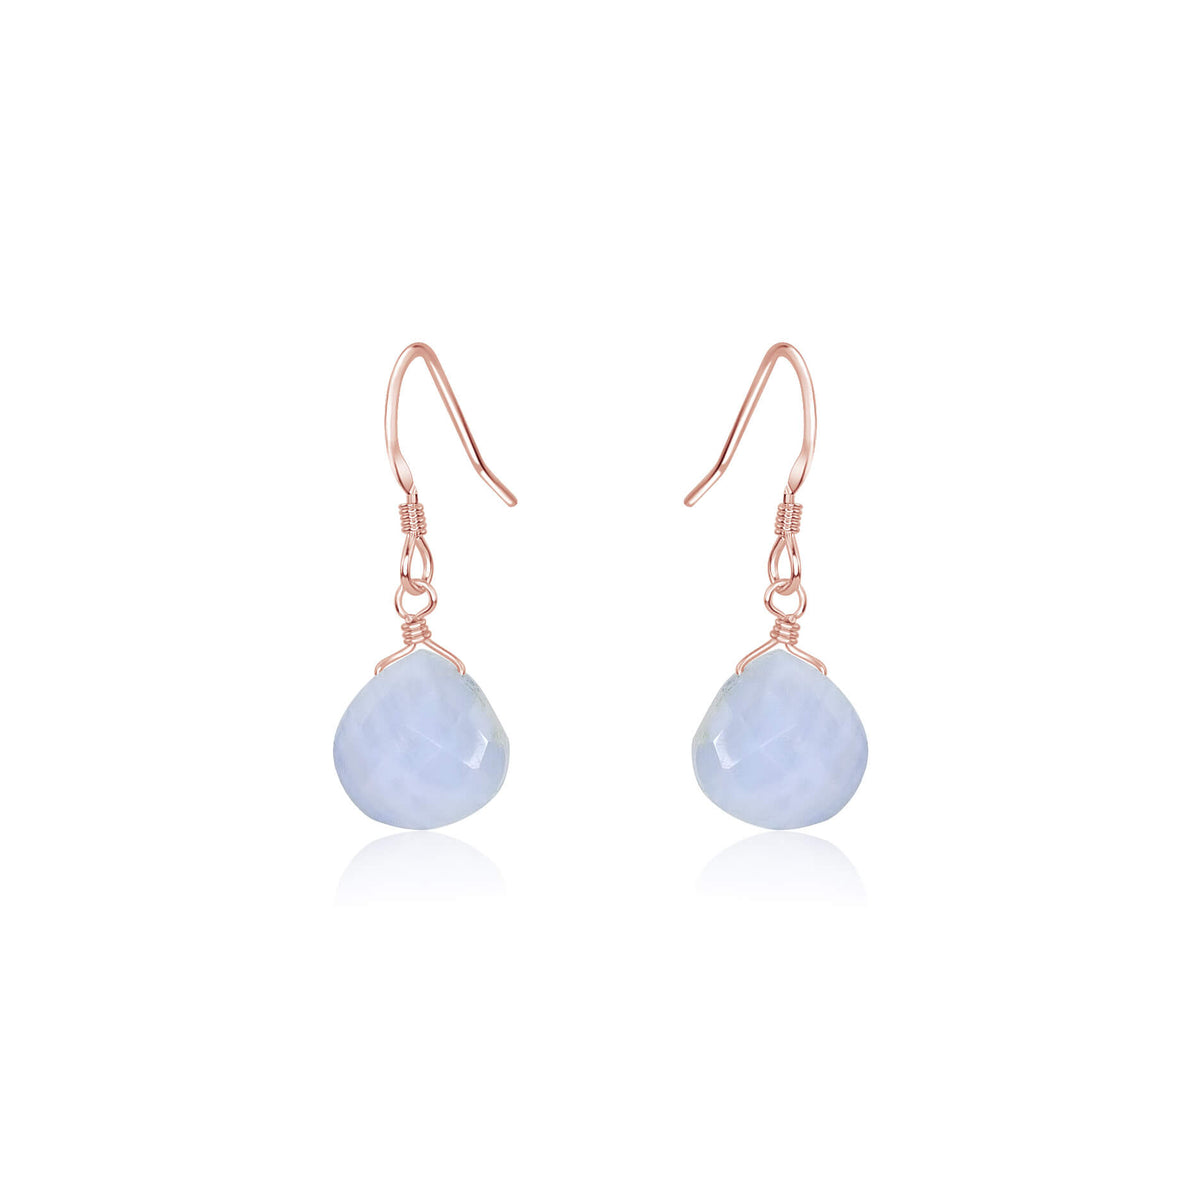 Teardrop Earrings - Blue Lace Agate - 14K Rose Gold Fill - Luna Tide Handmade Jewellery